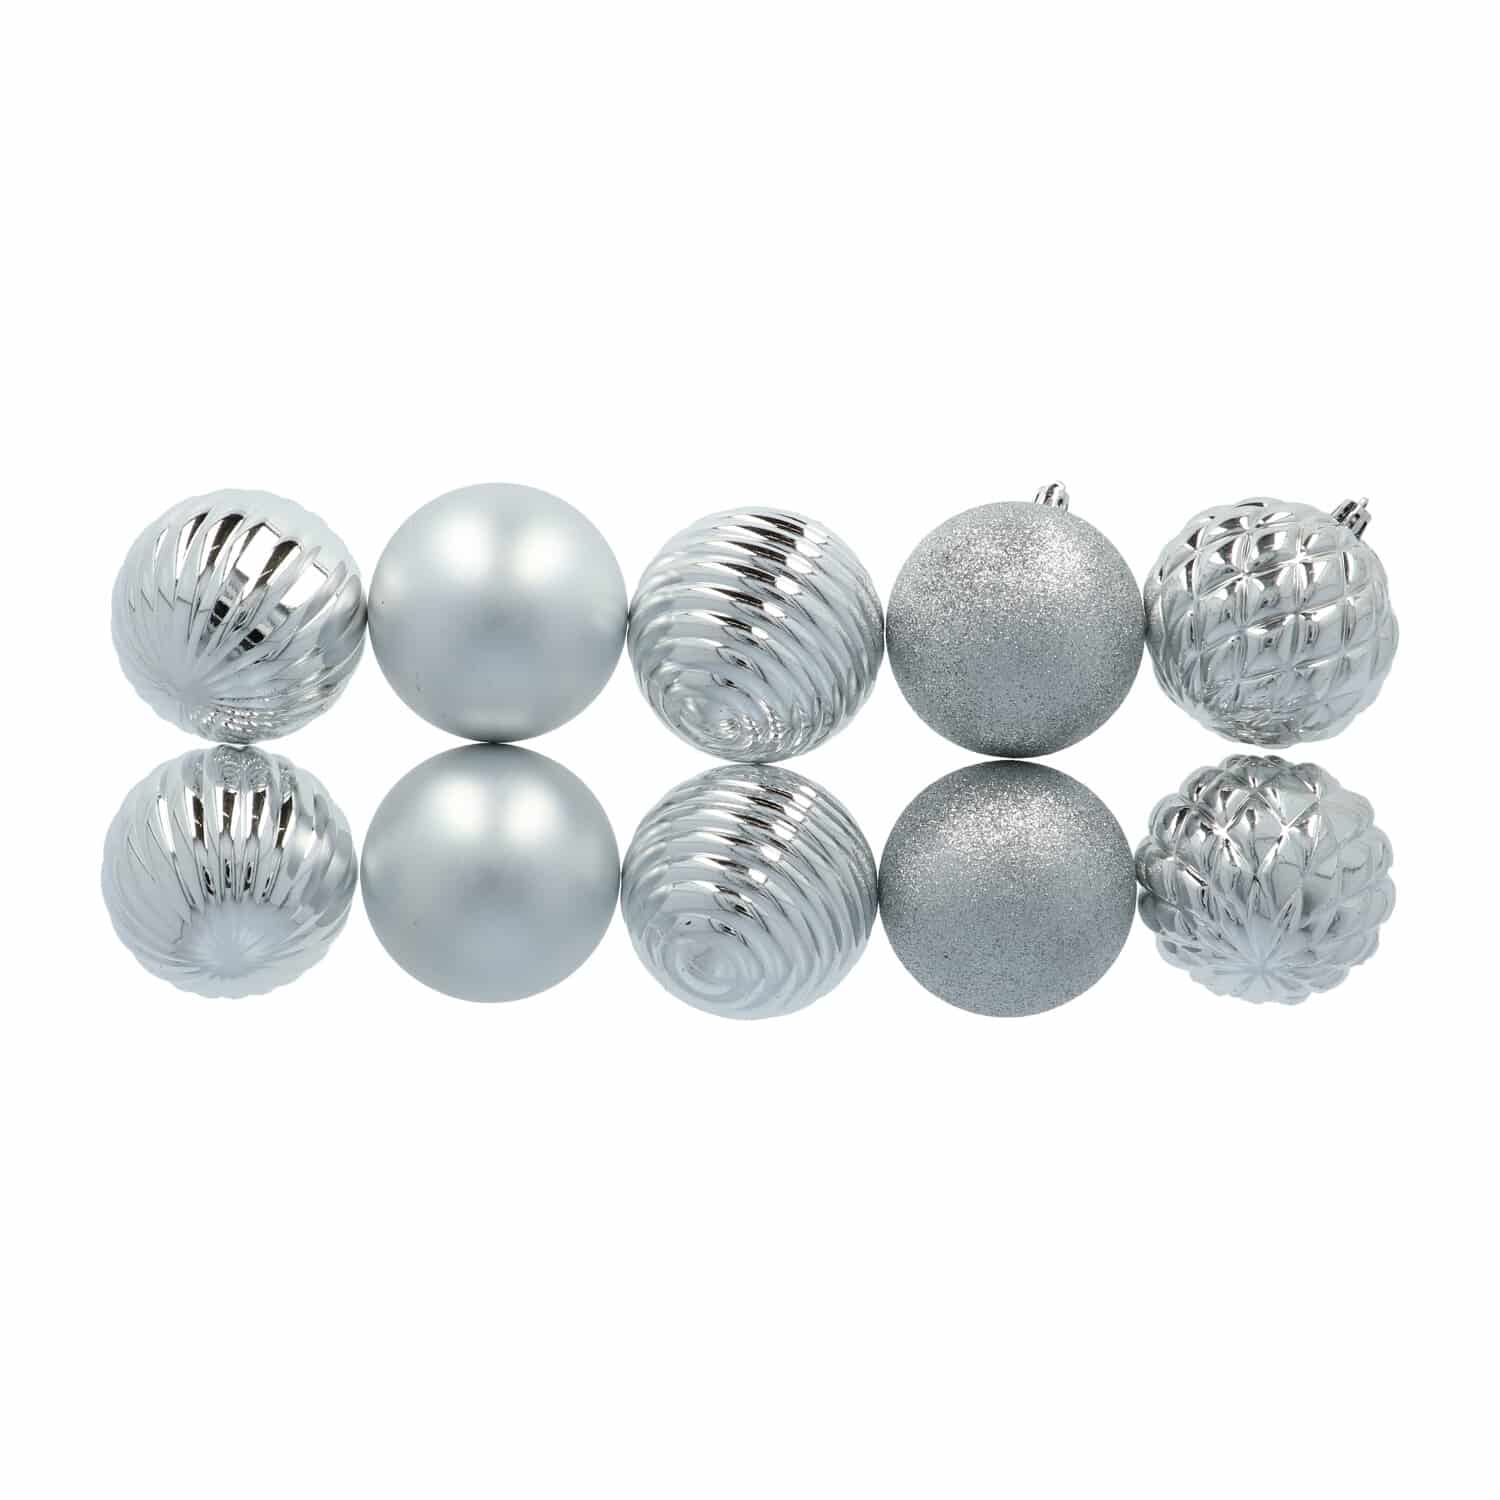 4goodz 50-delige Kerstballenset Zilver - geschikt voor binnen/buiten